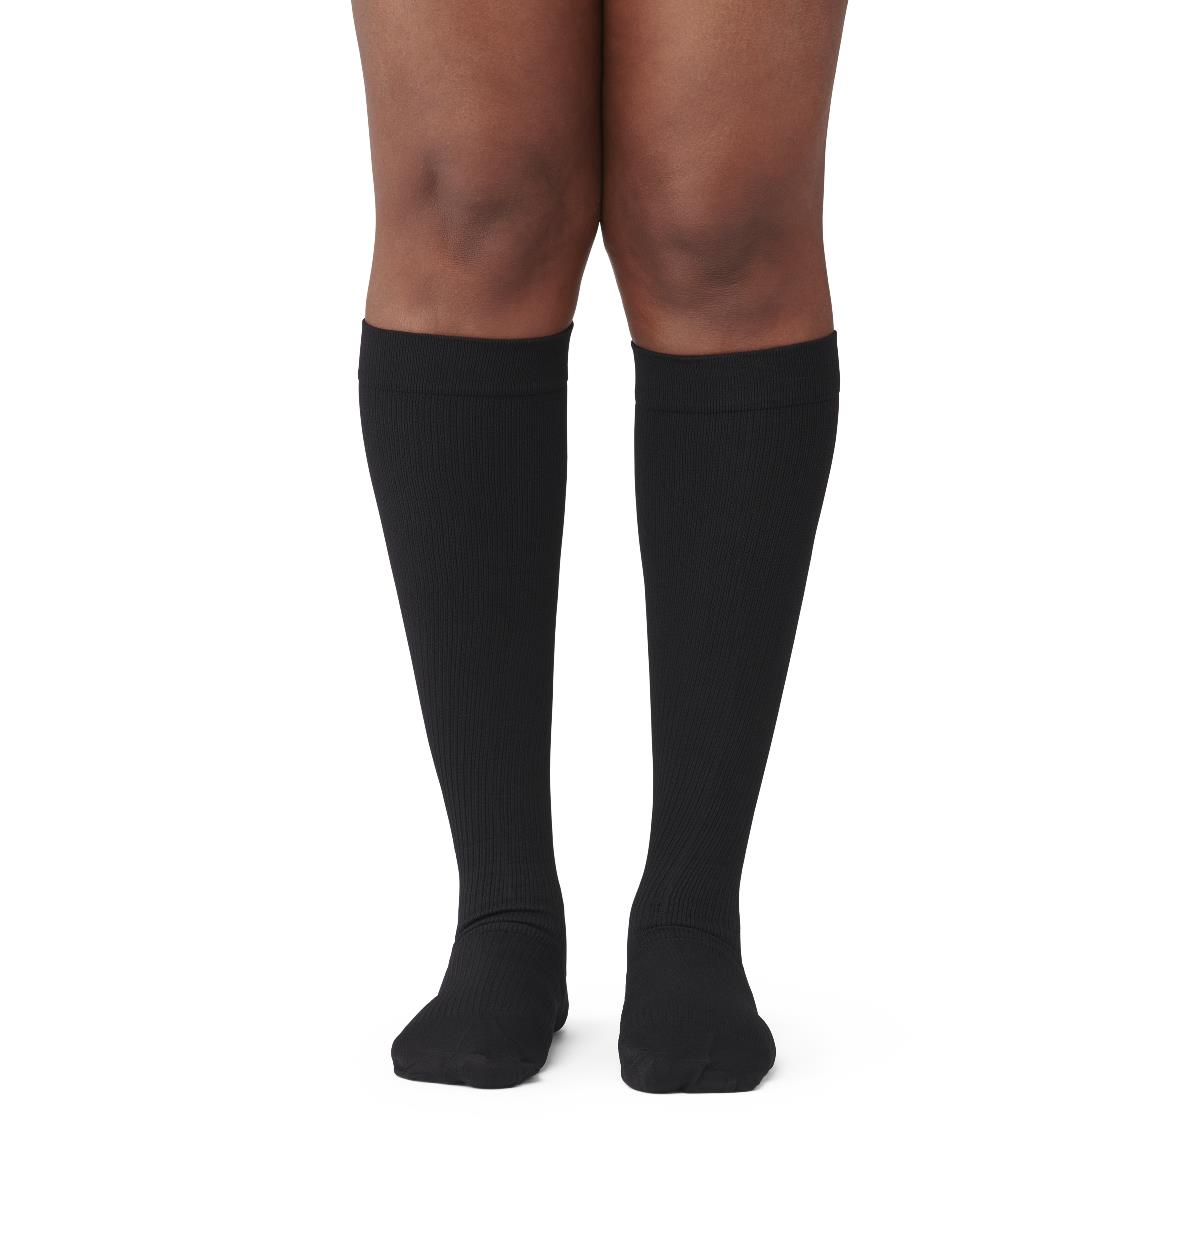 Compressana Calypso Strong Compression Knee High Socks